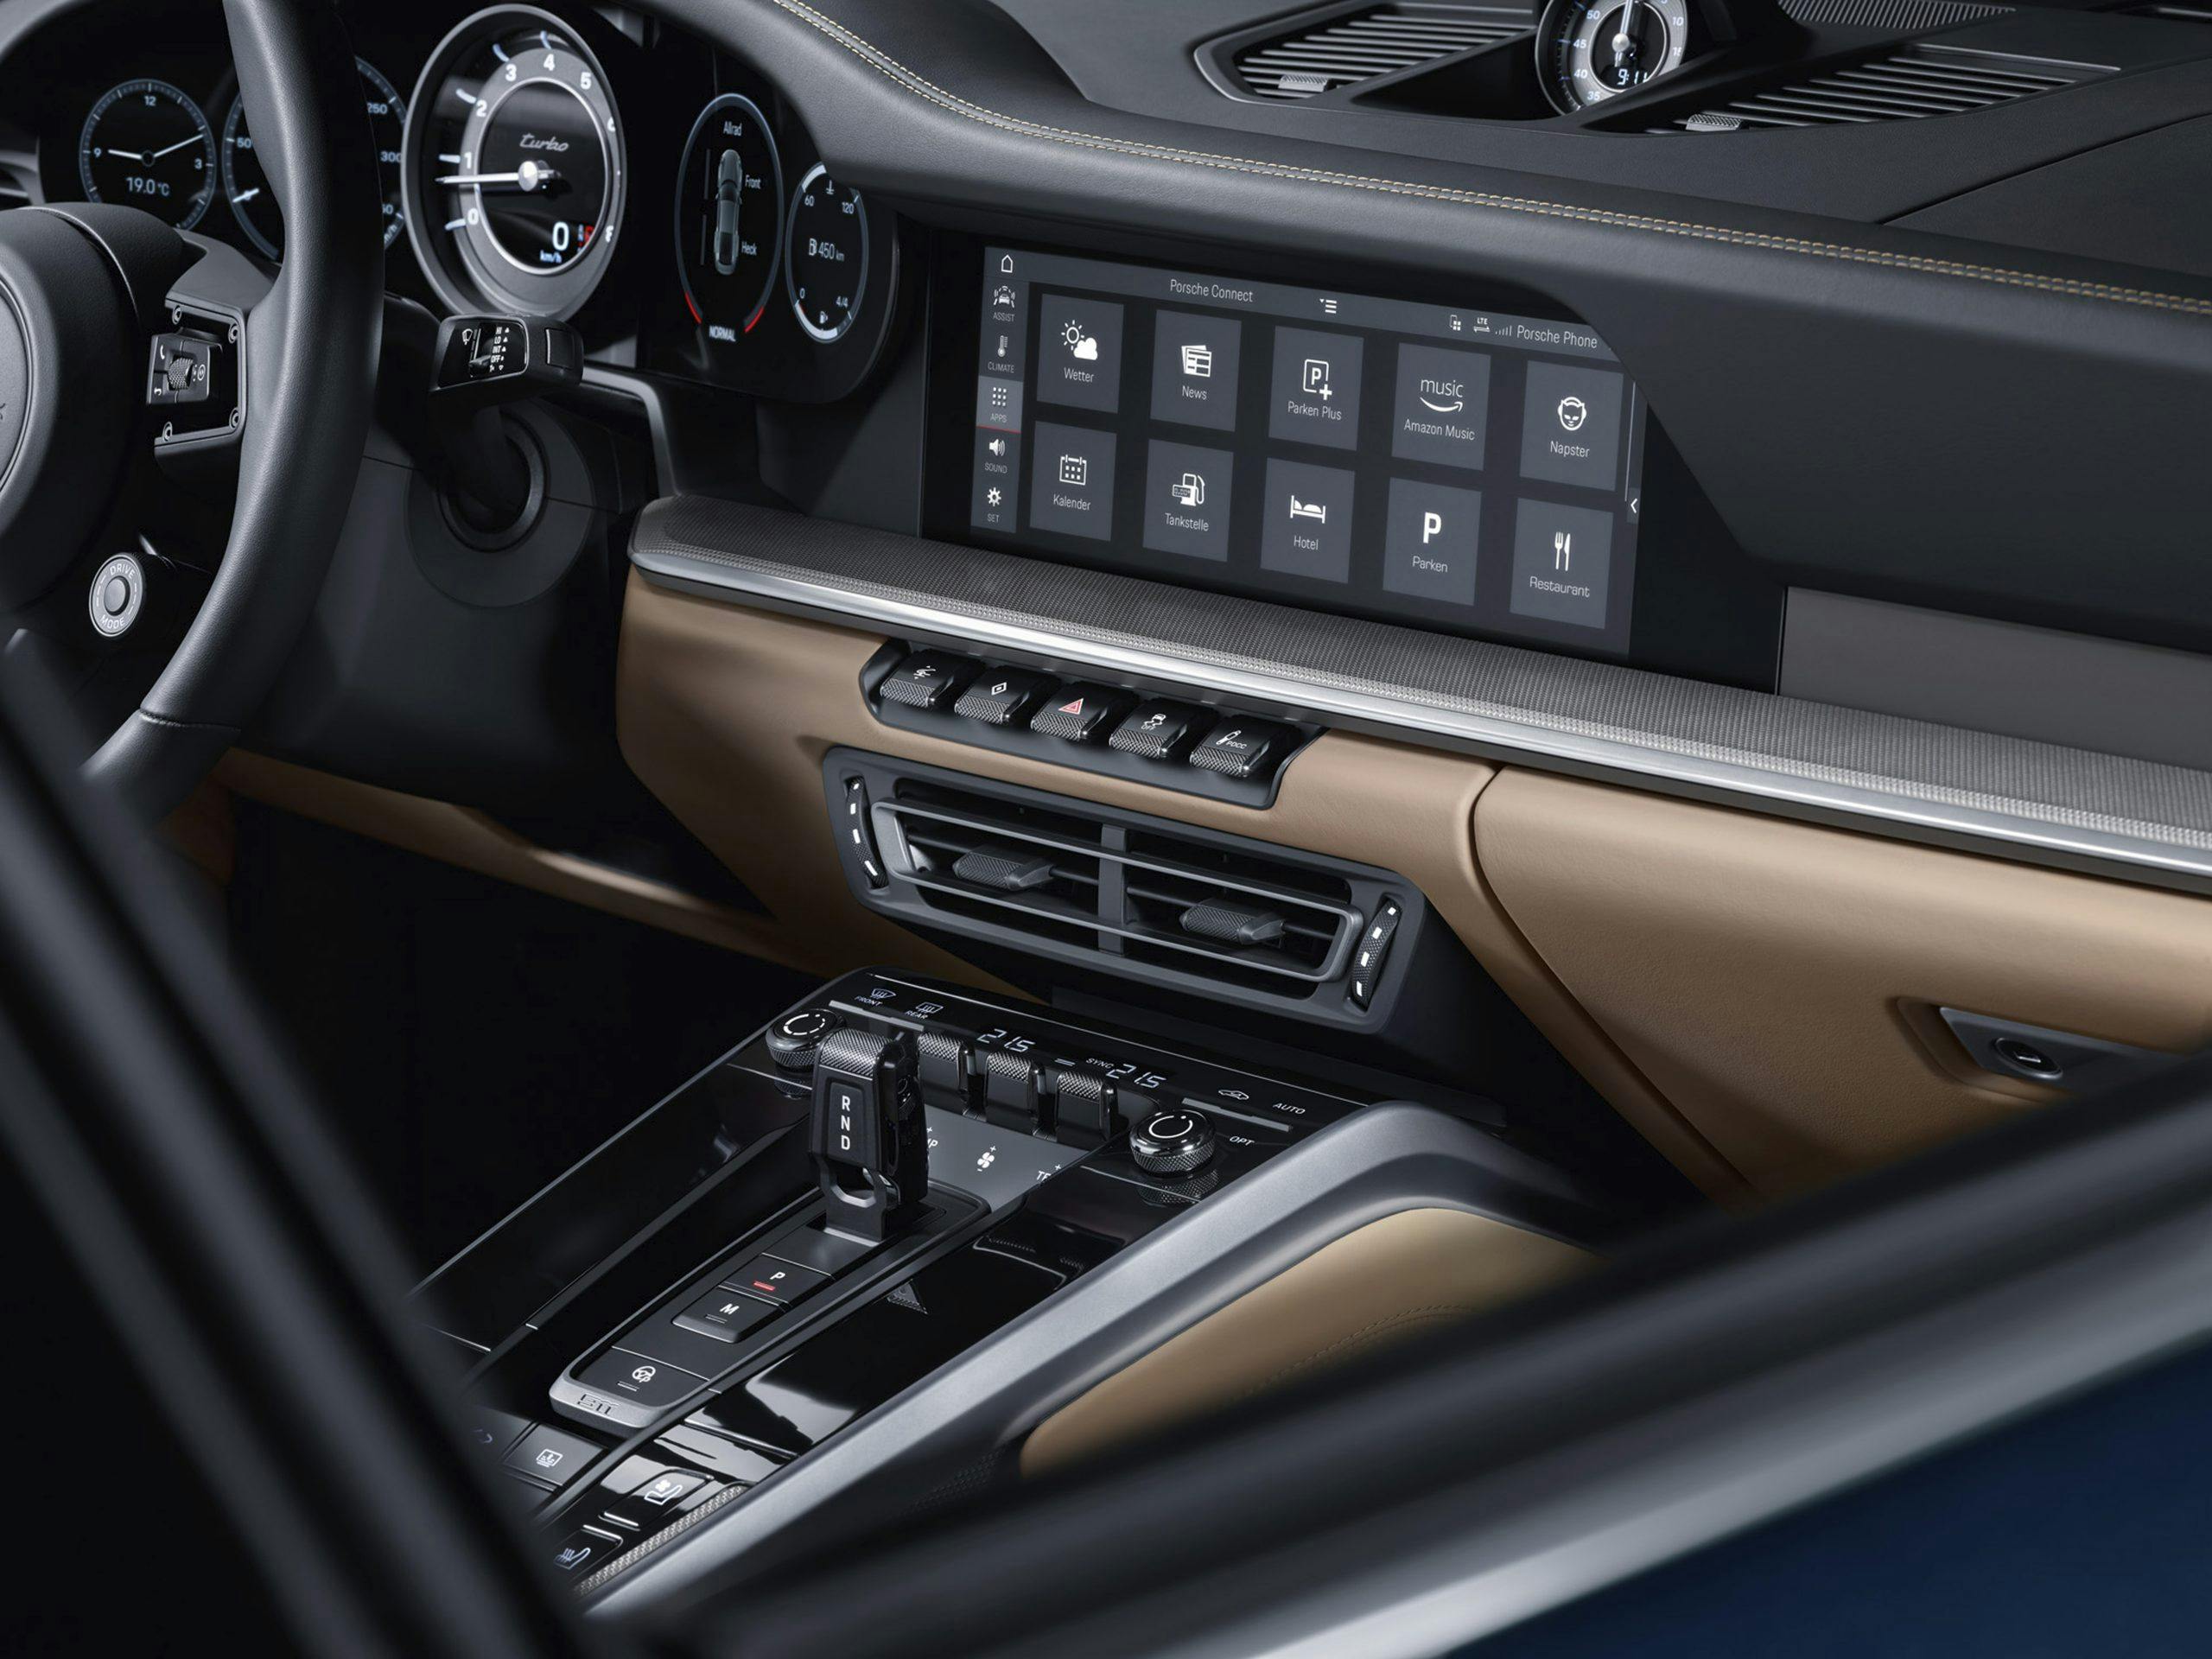 2021 Porsche 911 Turbo interior screen and console